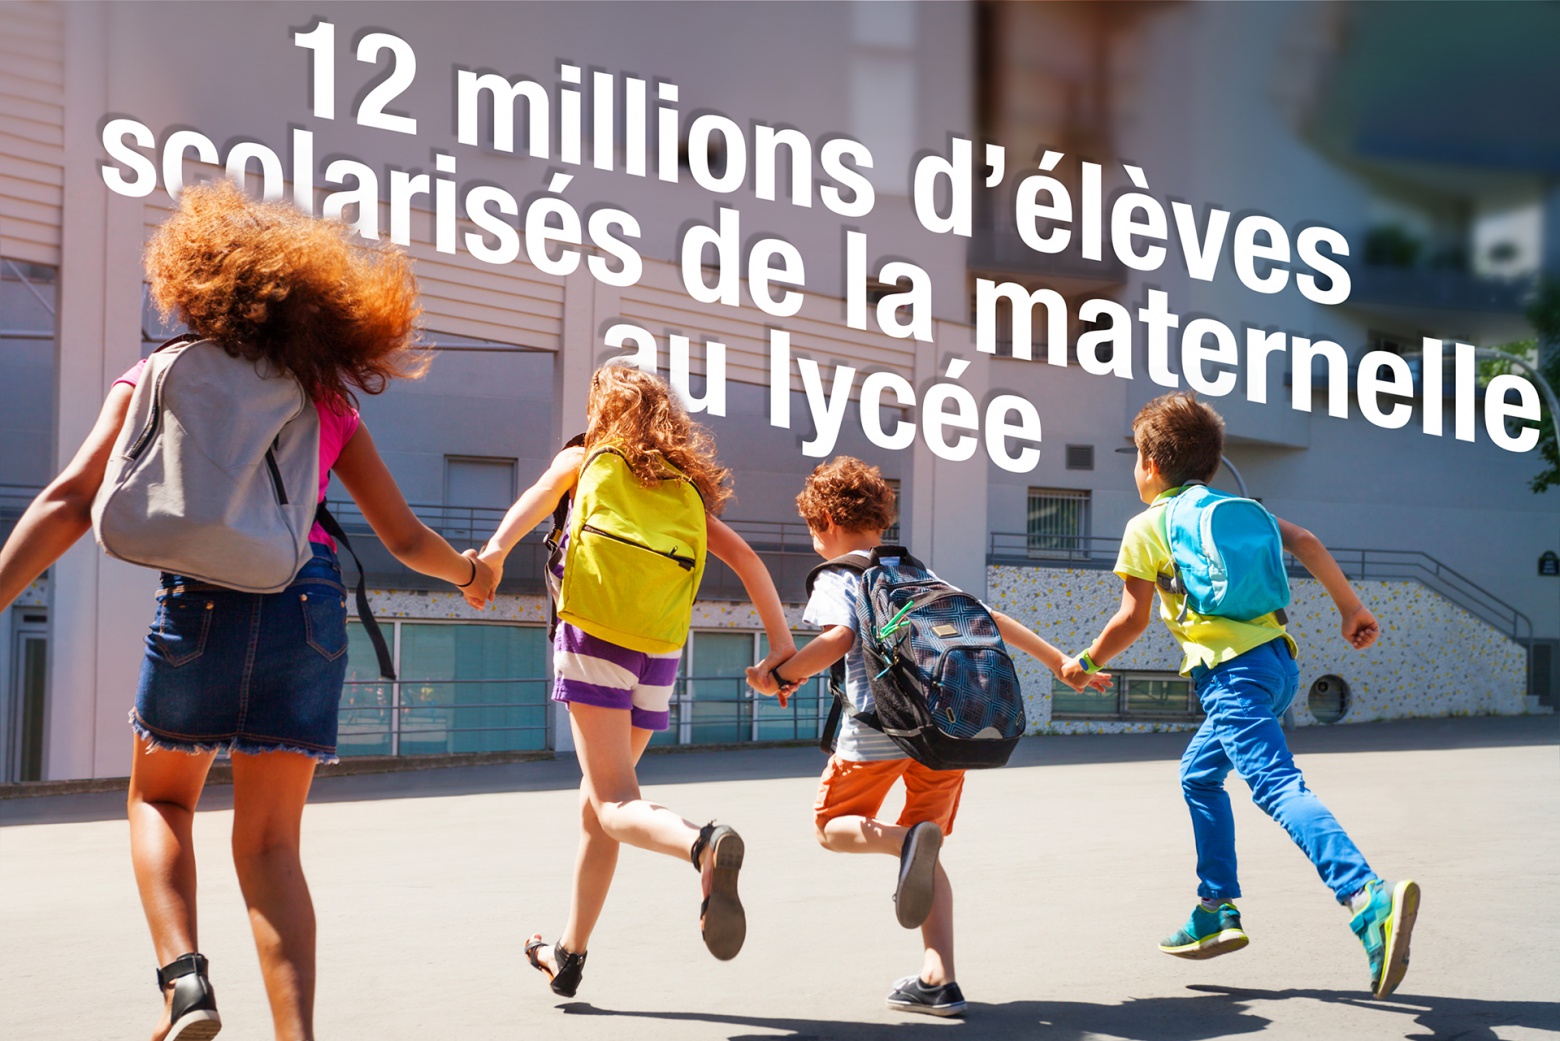 enfants se tenant par la main dans une cour d'école et texte 12 millions d'élèves scolarisés en France de la maternelle au lycée